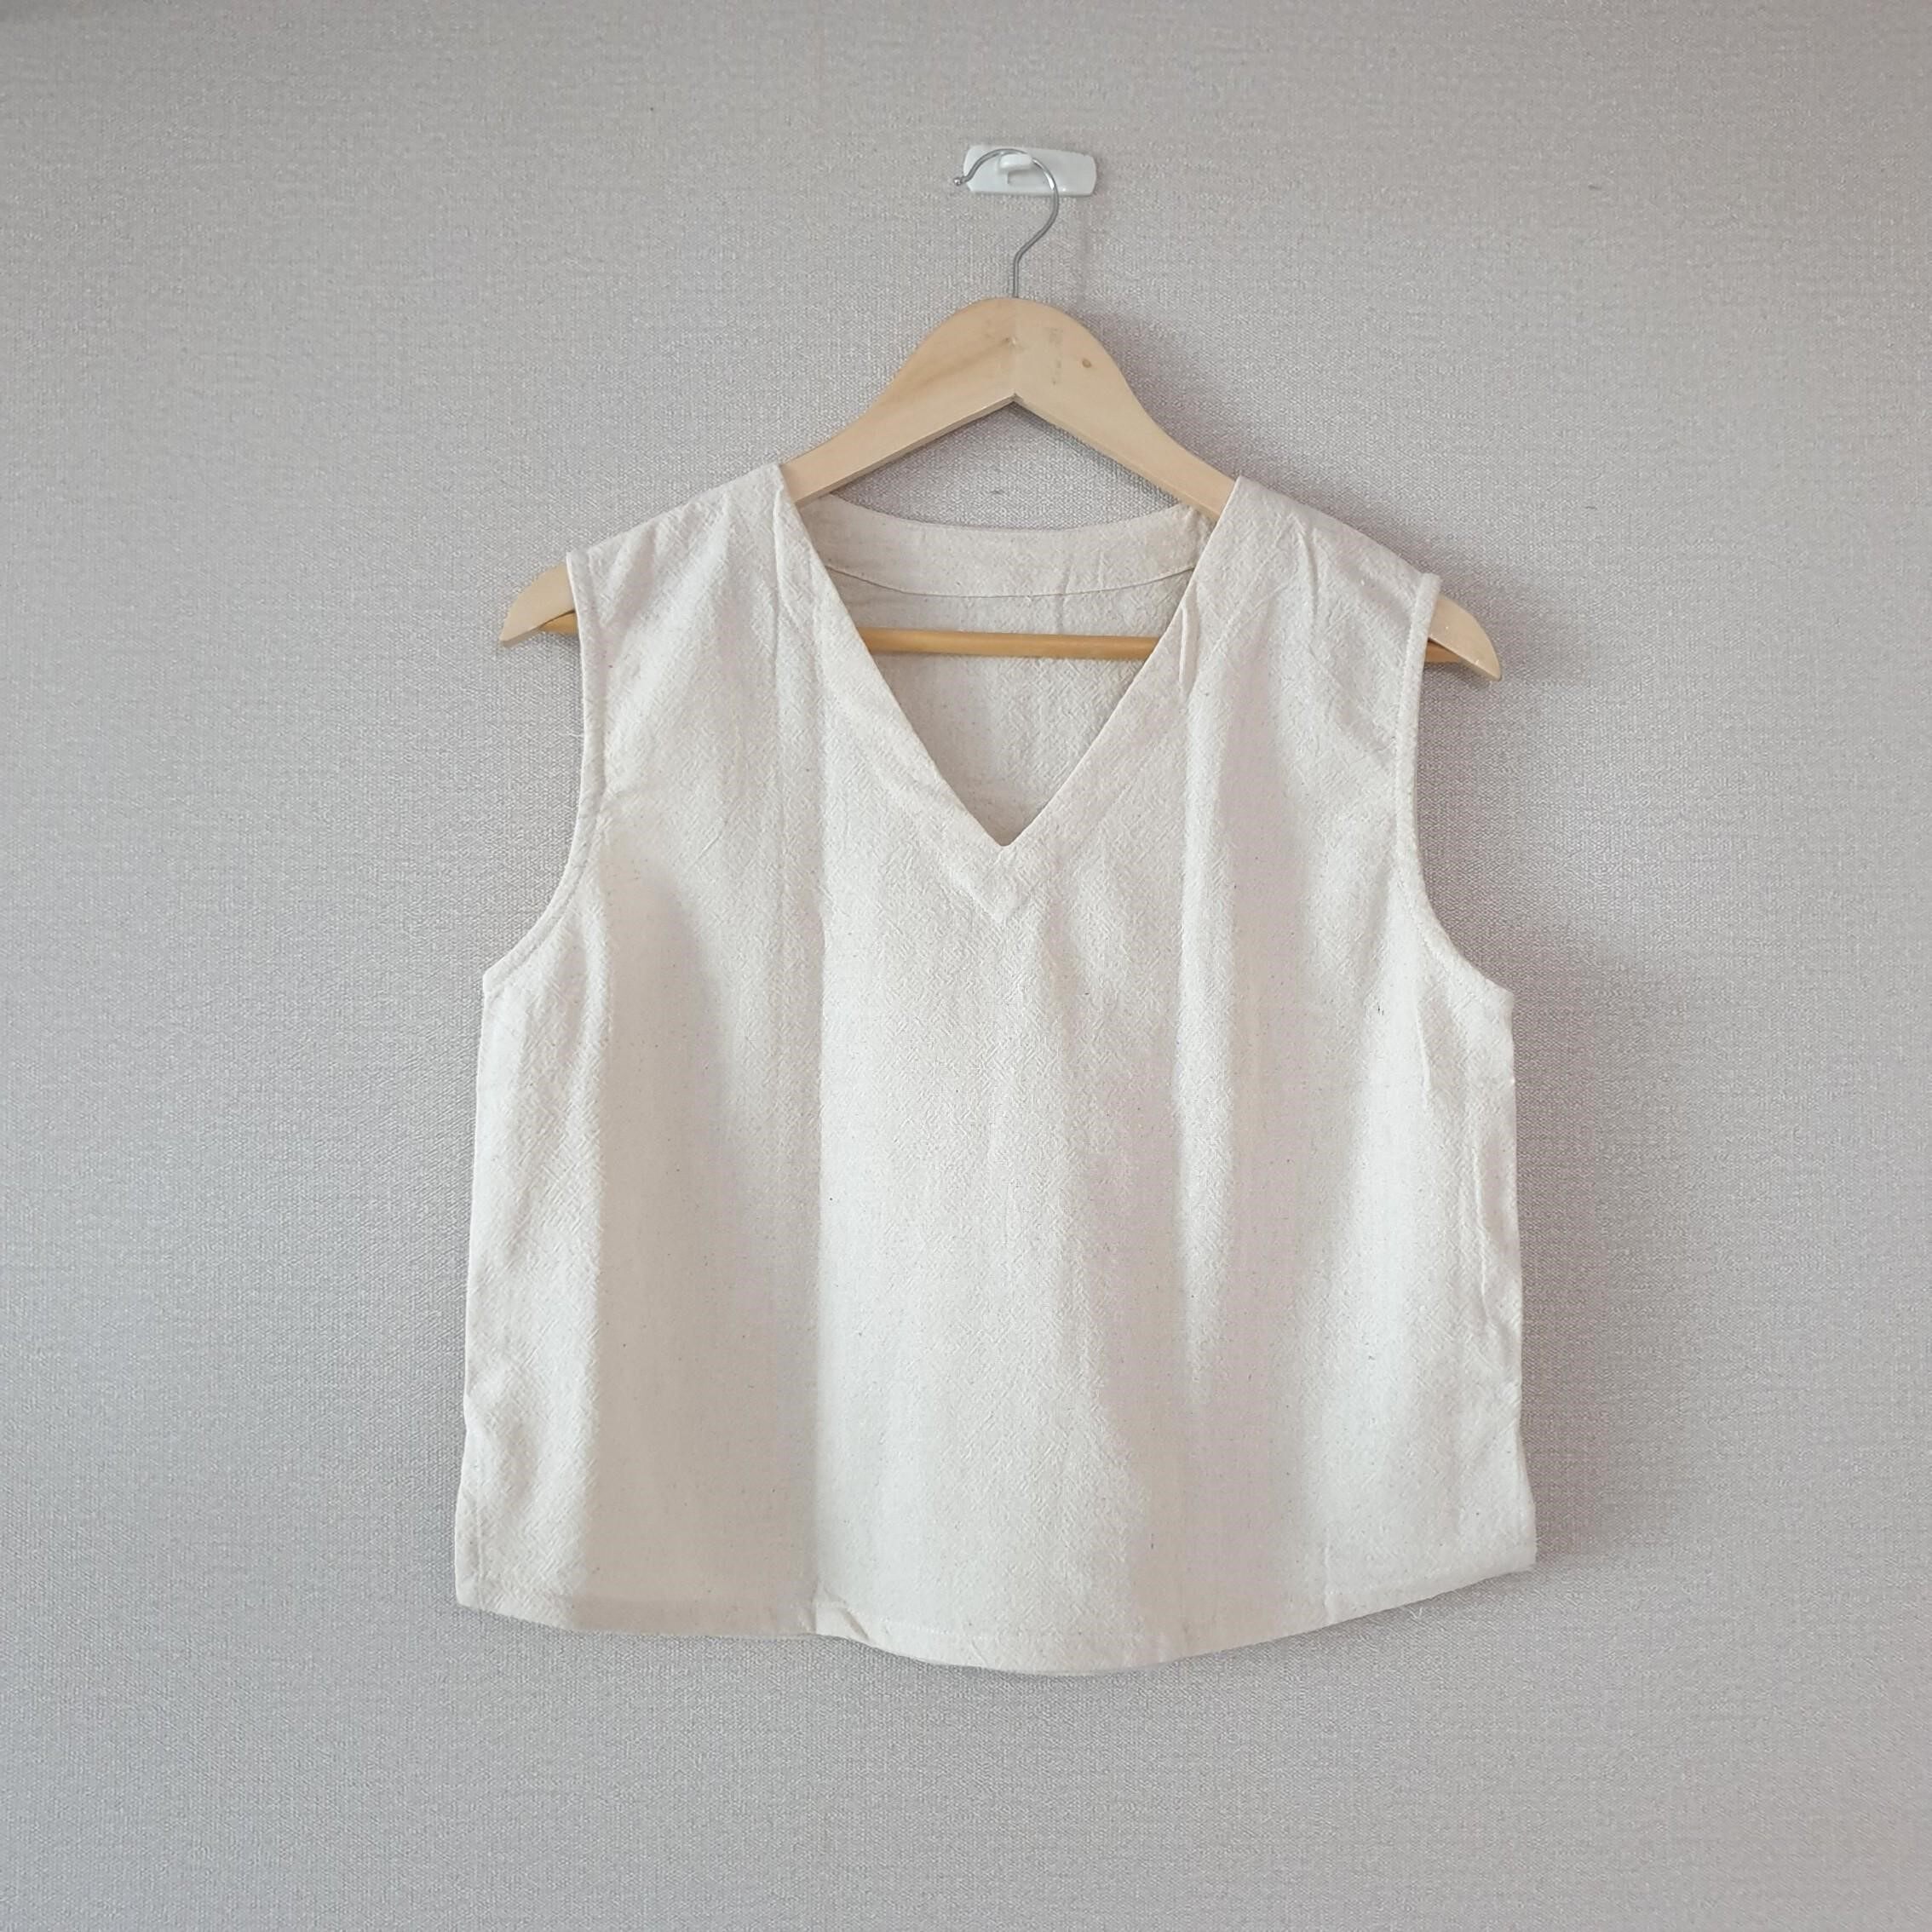 ?เสื้อผ้าฝ้ายพื้นเมือง คอวี แขนกุด ดูดี style minimal -100%Cotton from Chiang mai